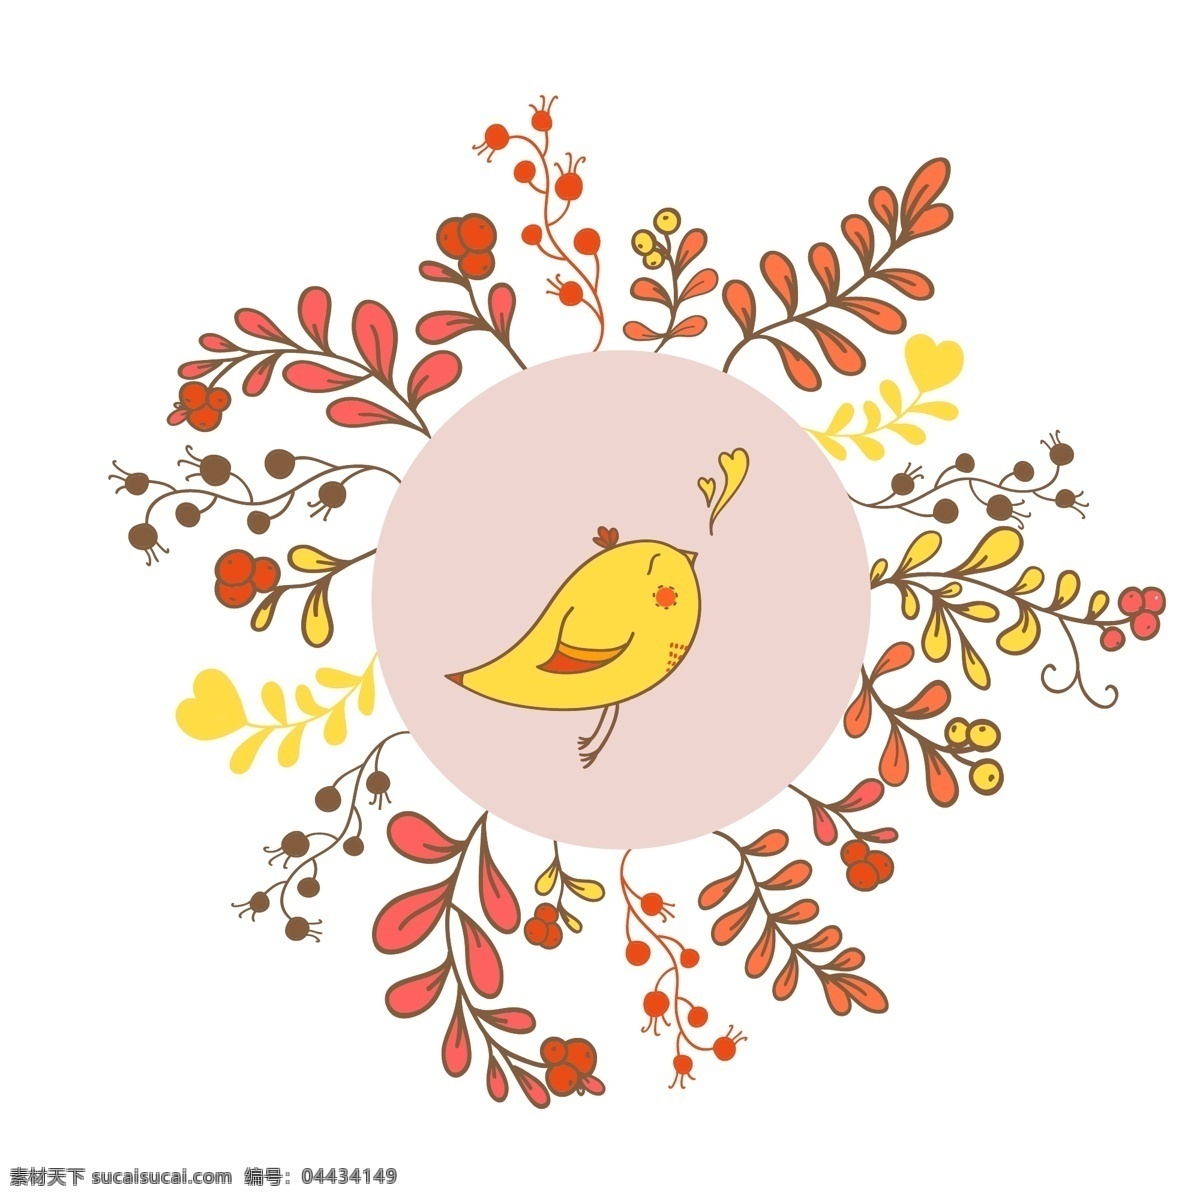 插画 动物 卡通 时尚 手绘 小鸟 植物